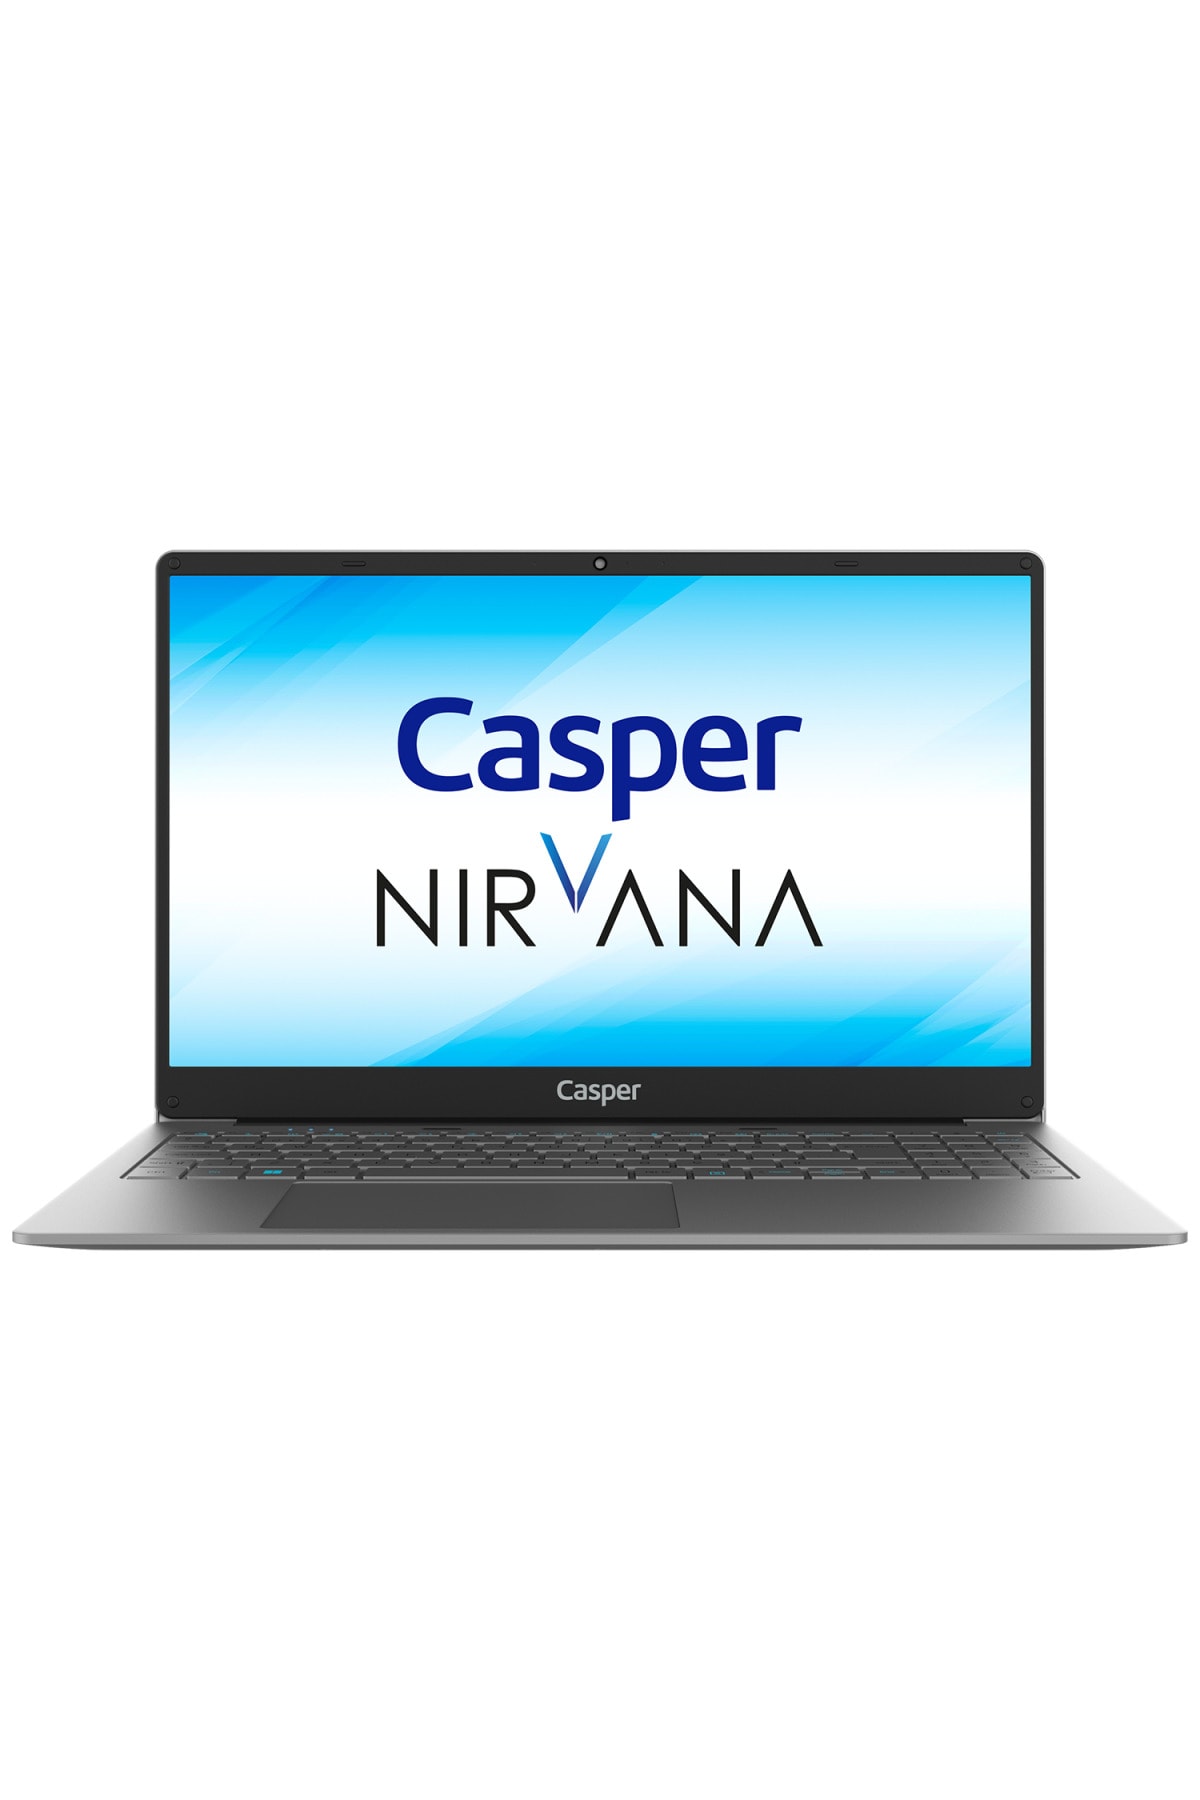 Casper Nirvana F500.1115-8d00x-g-f Intel Core I3-1115g4 8gb Ram 240gb M2 Ssd Freedos